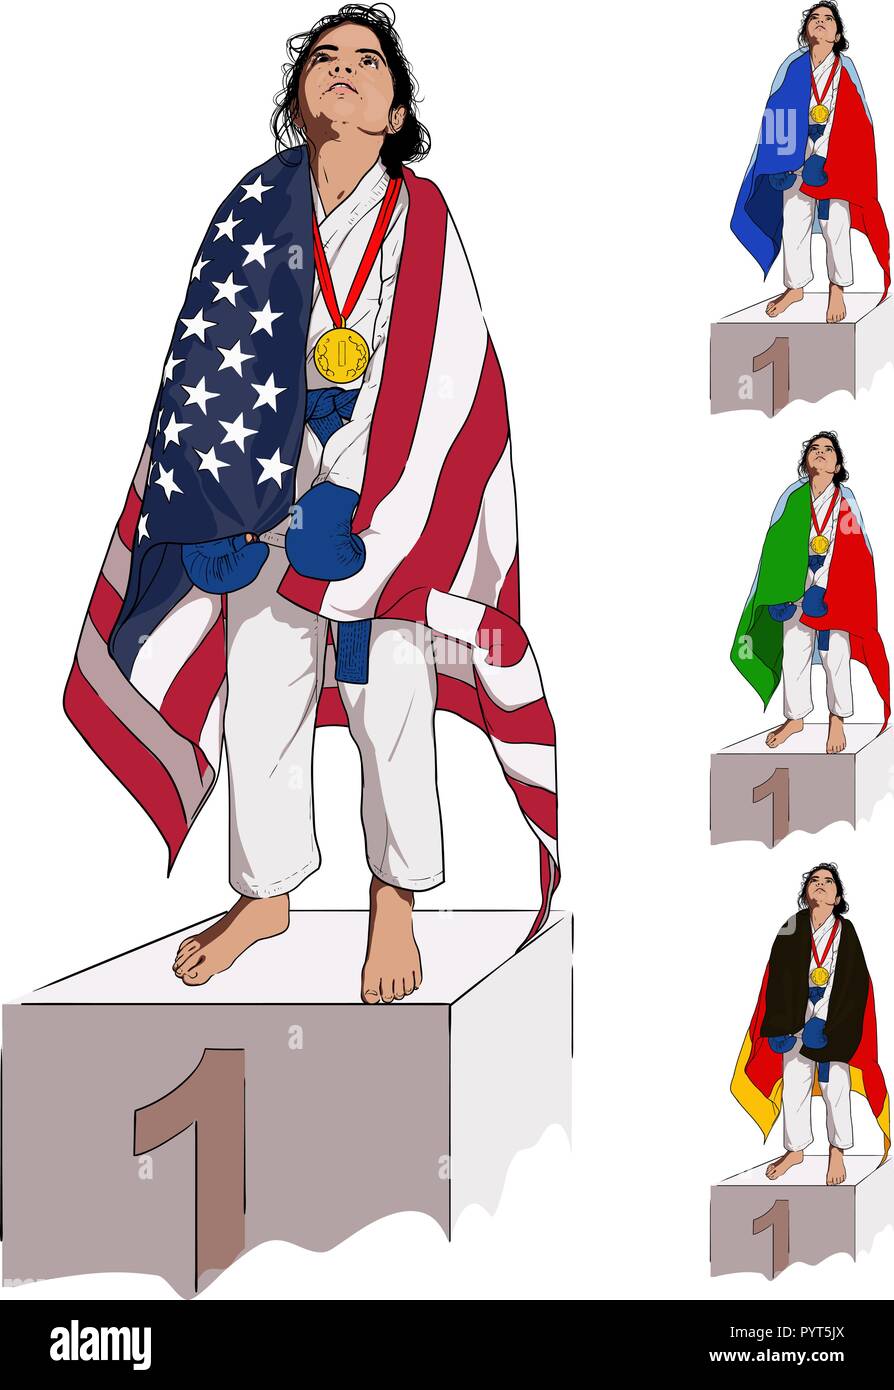 Una ragazzina in un kimono sorge in primo luogo su un piedistallo, avvolgendo le spalle in una bandiera statunitense. E alcune immagini bonus con le bandiere di altri coun Illustrazione Vettoriale